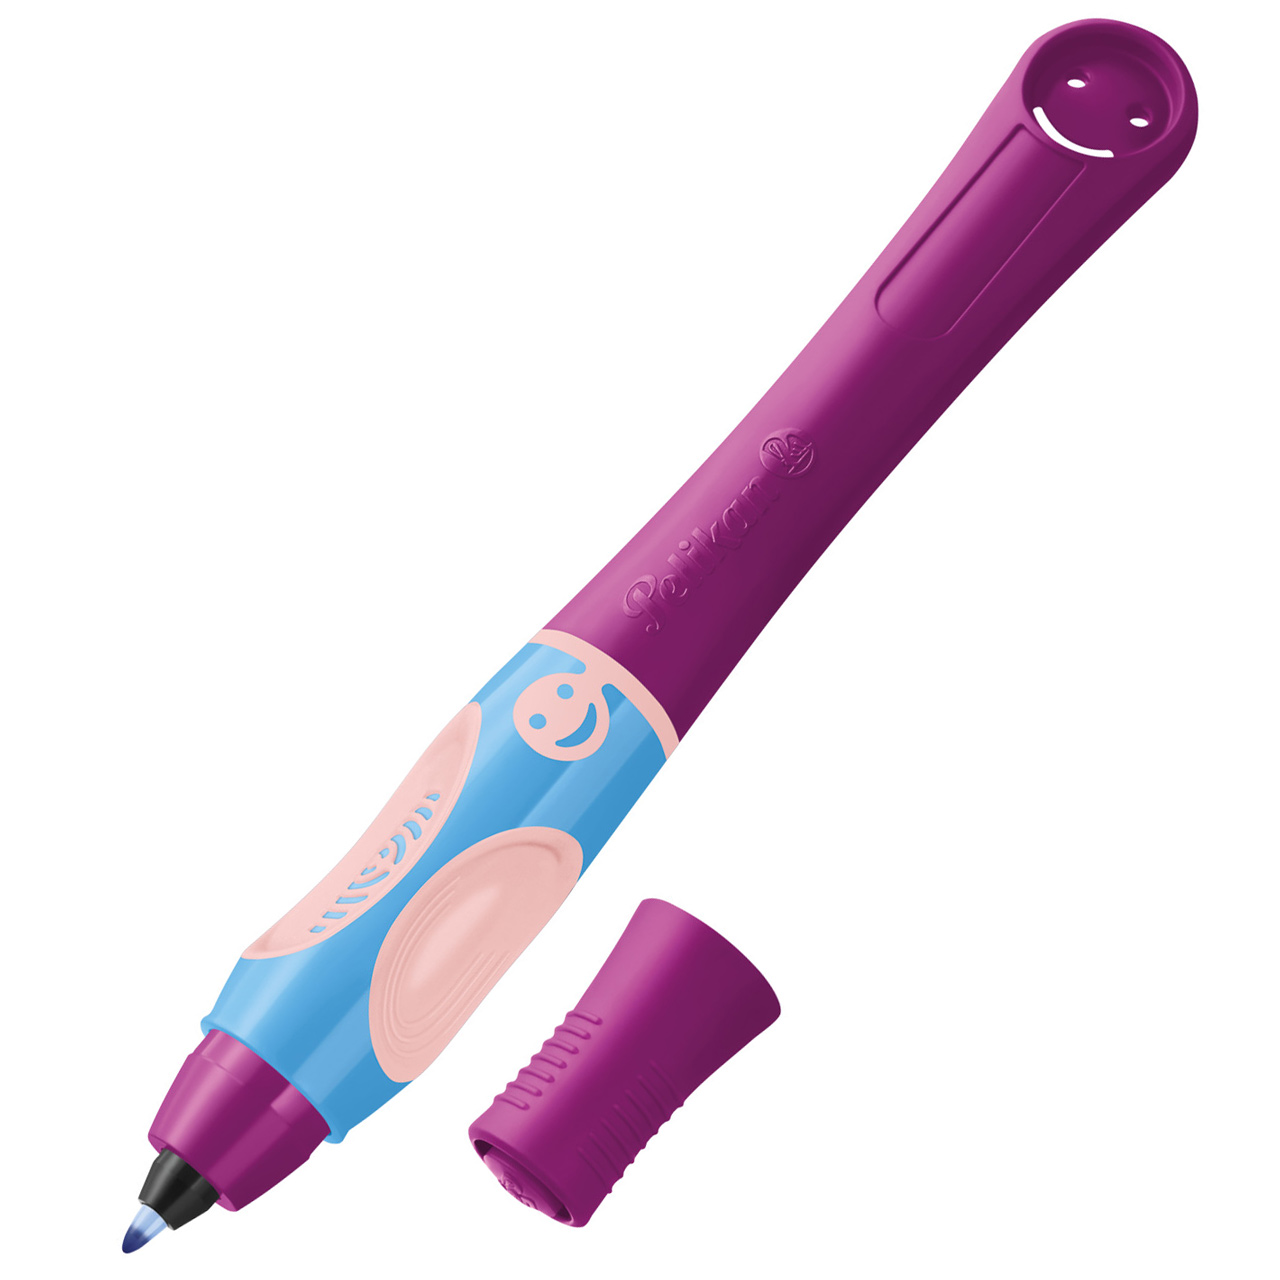 Pelikan-Griffix-Tintenroller-821032-Sweet-berry-lila-Rechtshander-tintenschreiber-kaufen-lafueliki